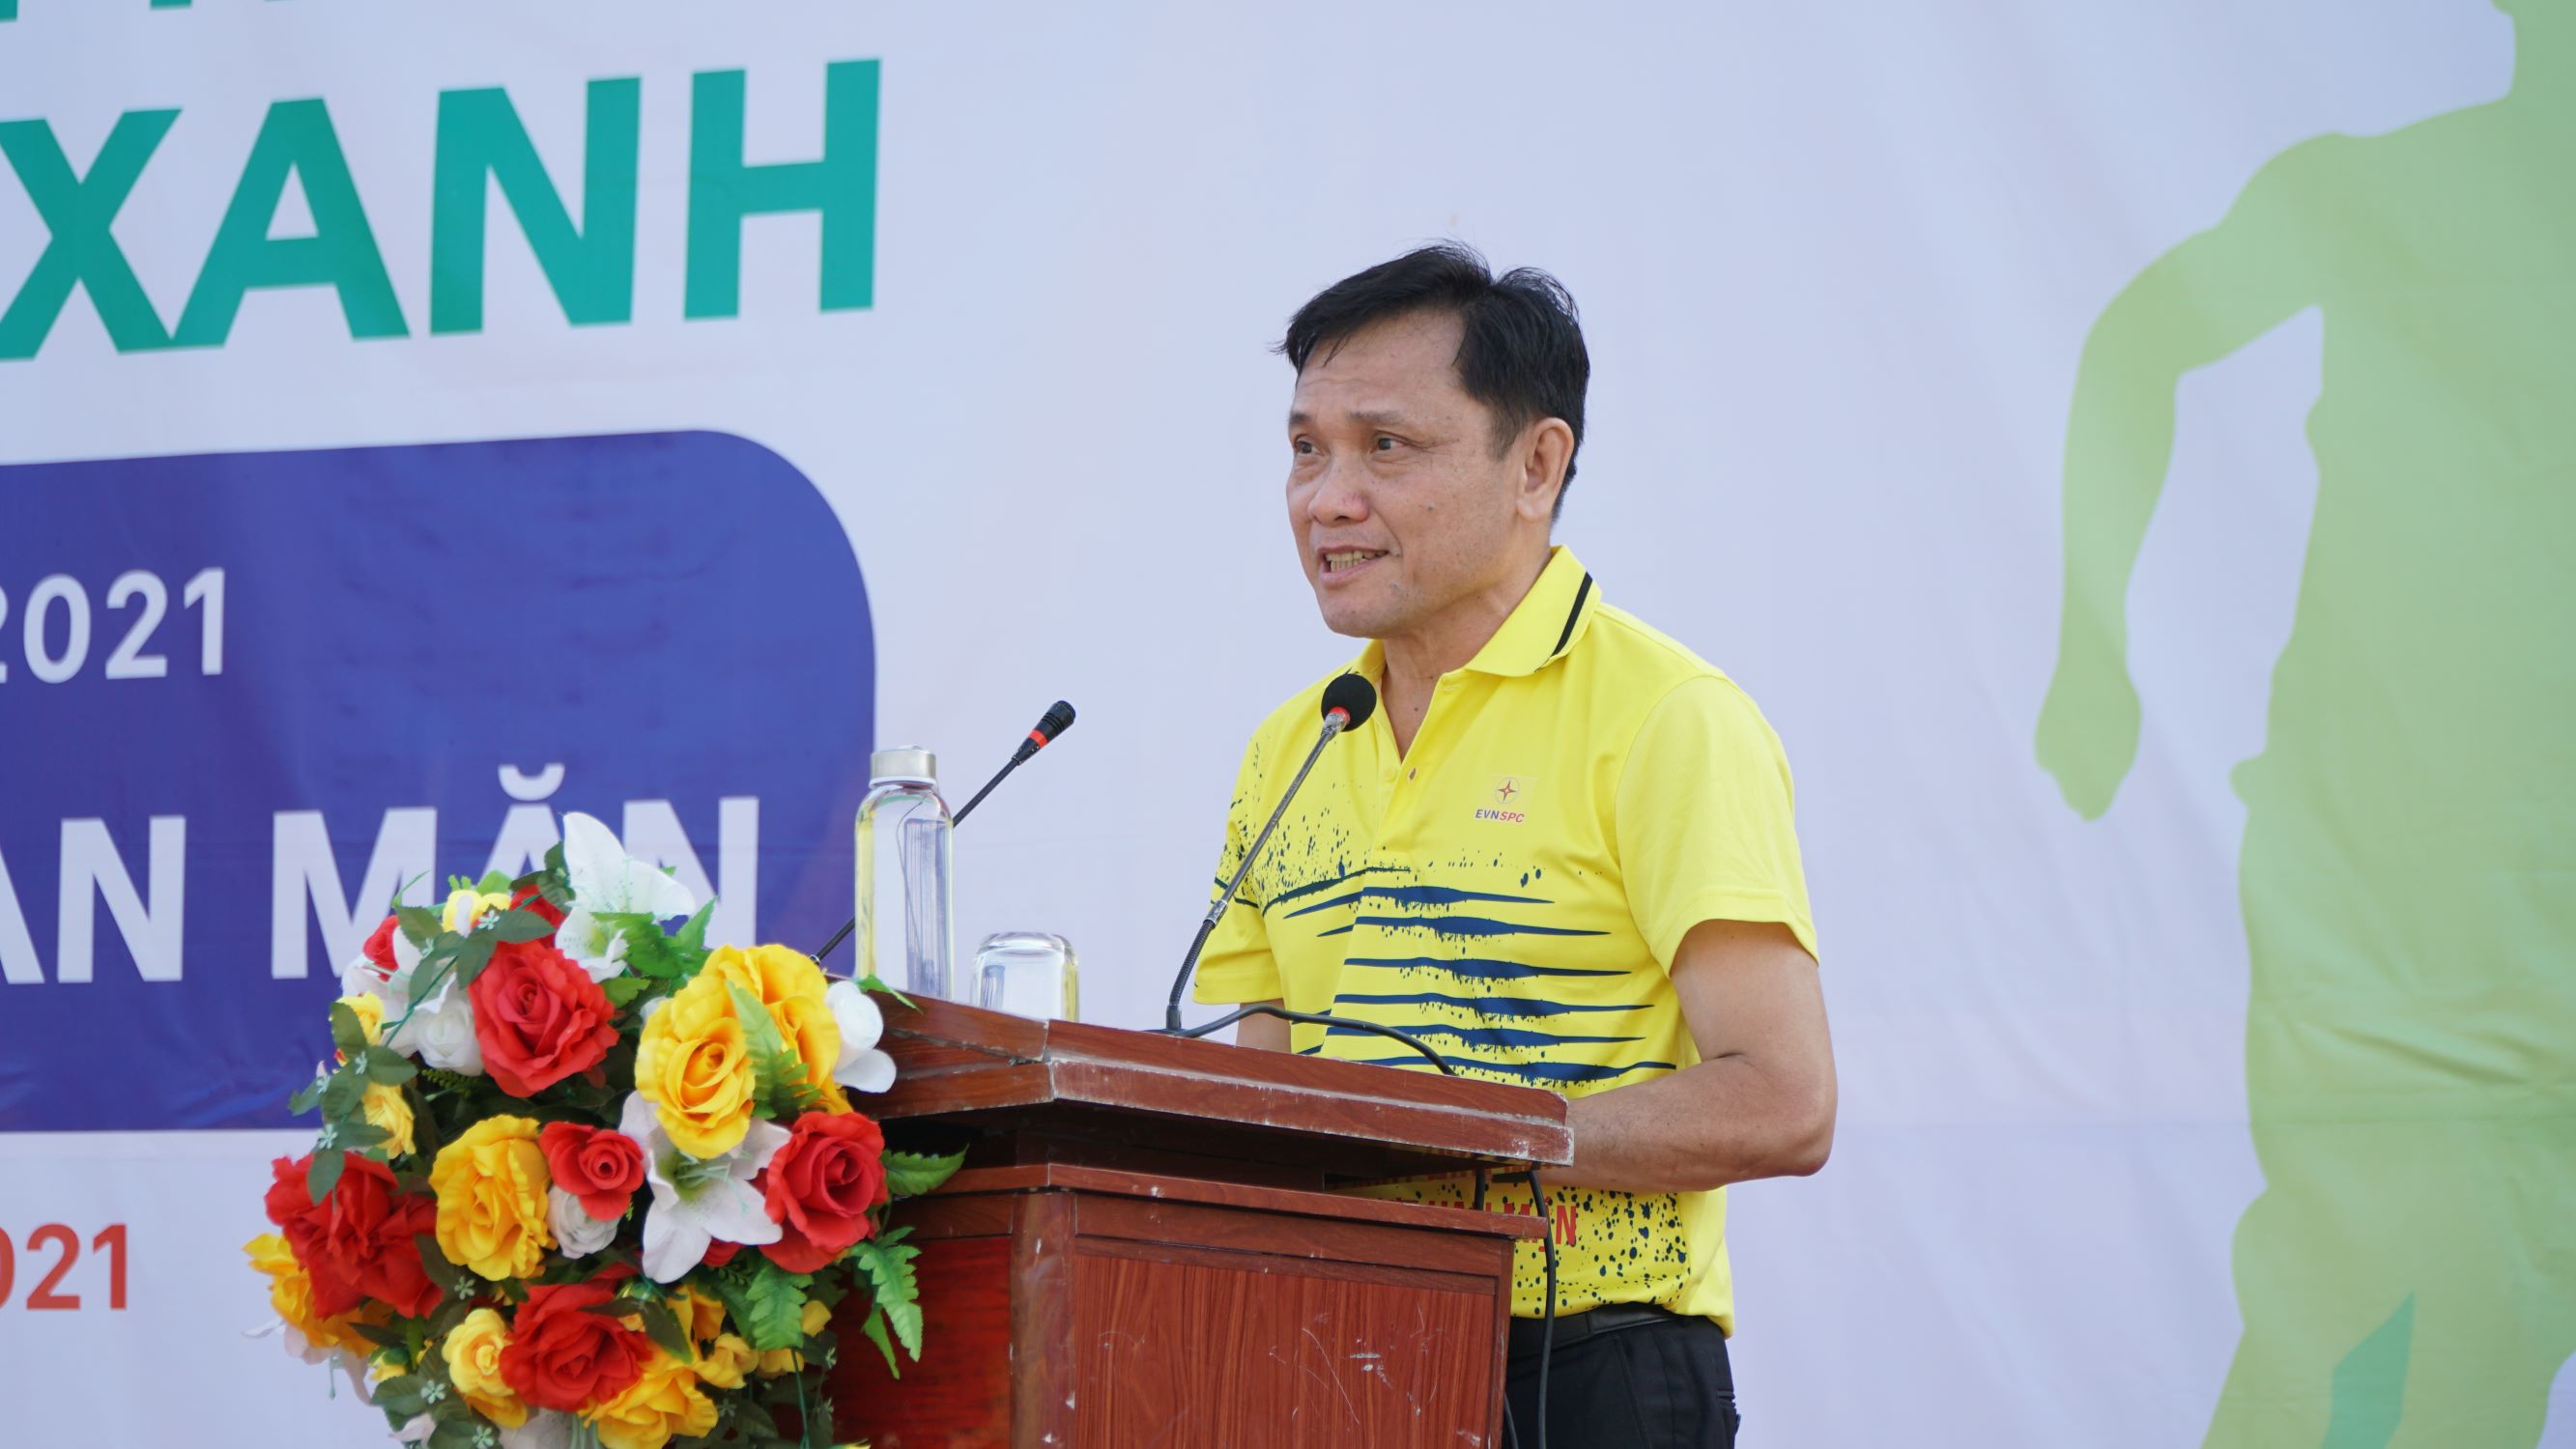 Ông Nguyễn Phước Đức, Tổng giám đốc EVNSPC phát biểu tại buổi lễ. Ảnh: Văn Hoàng 